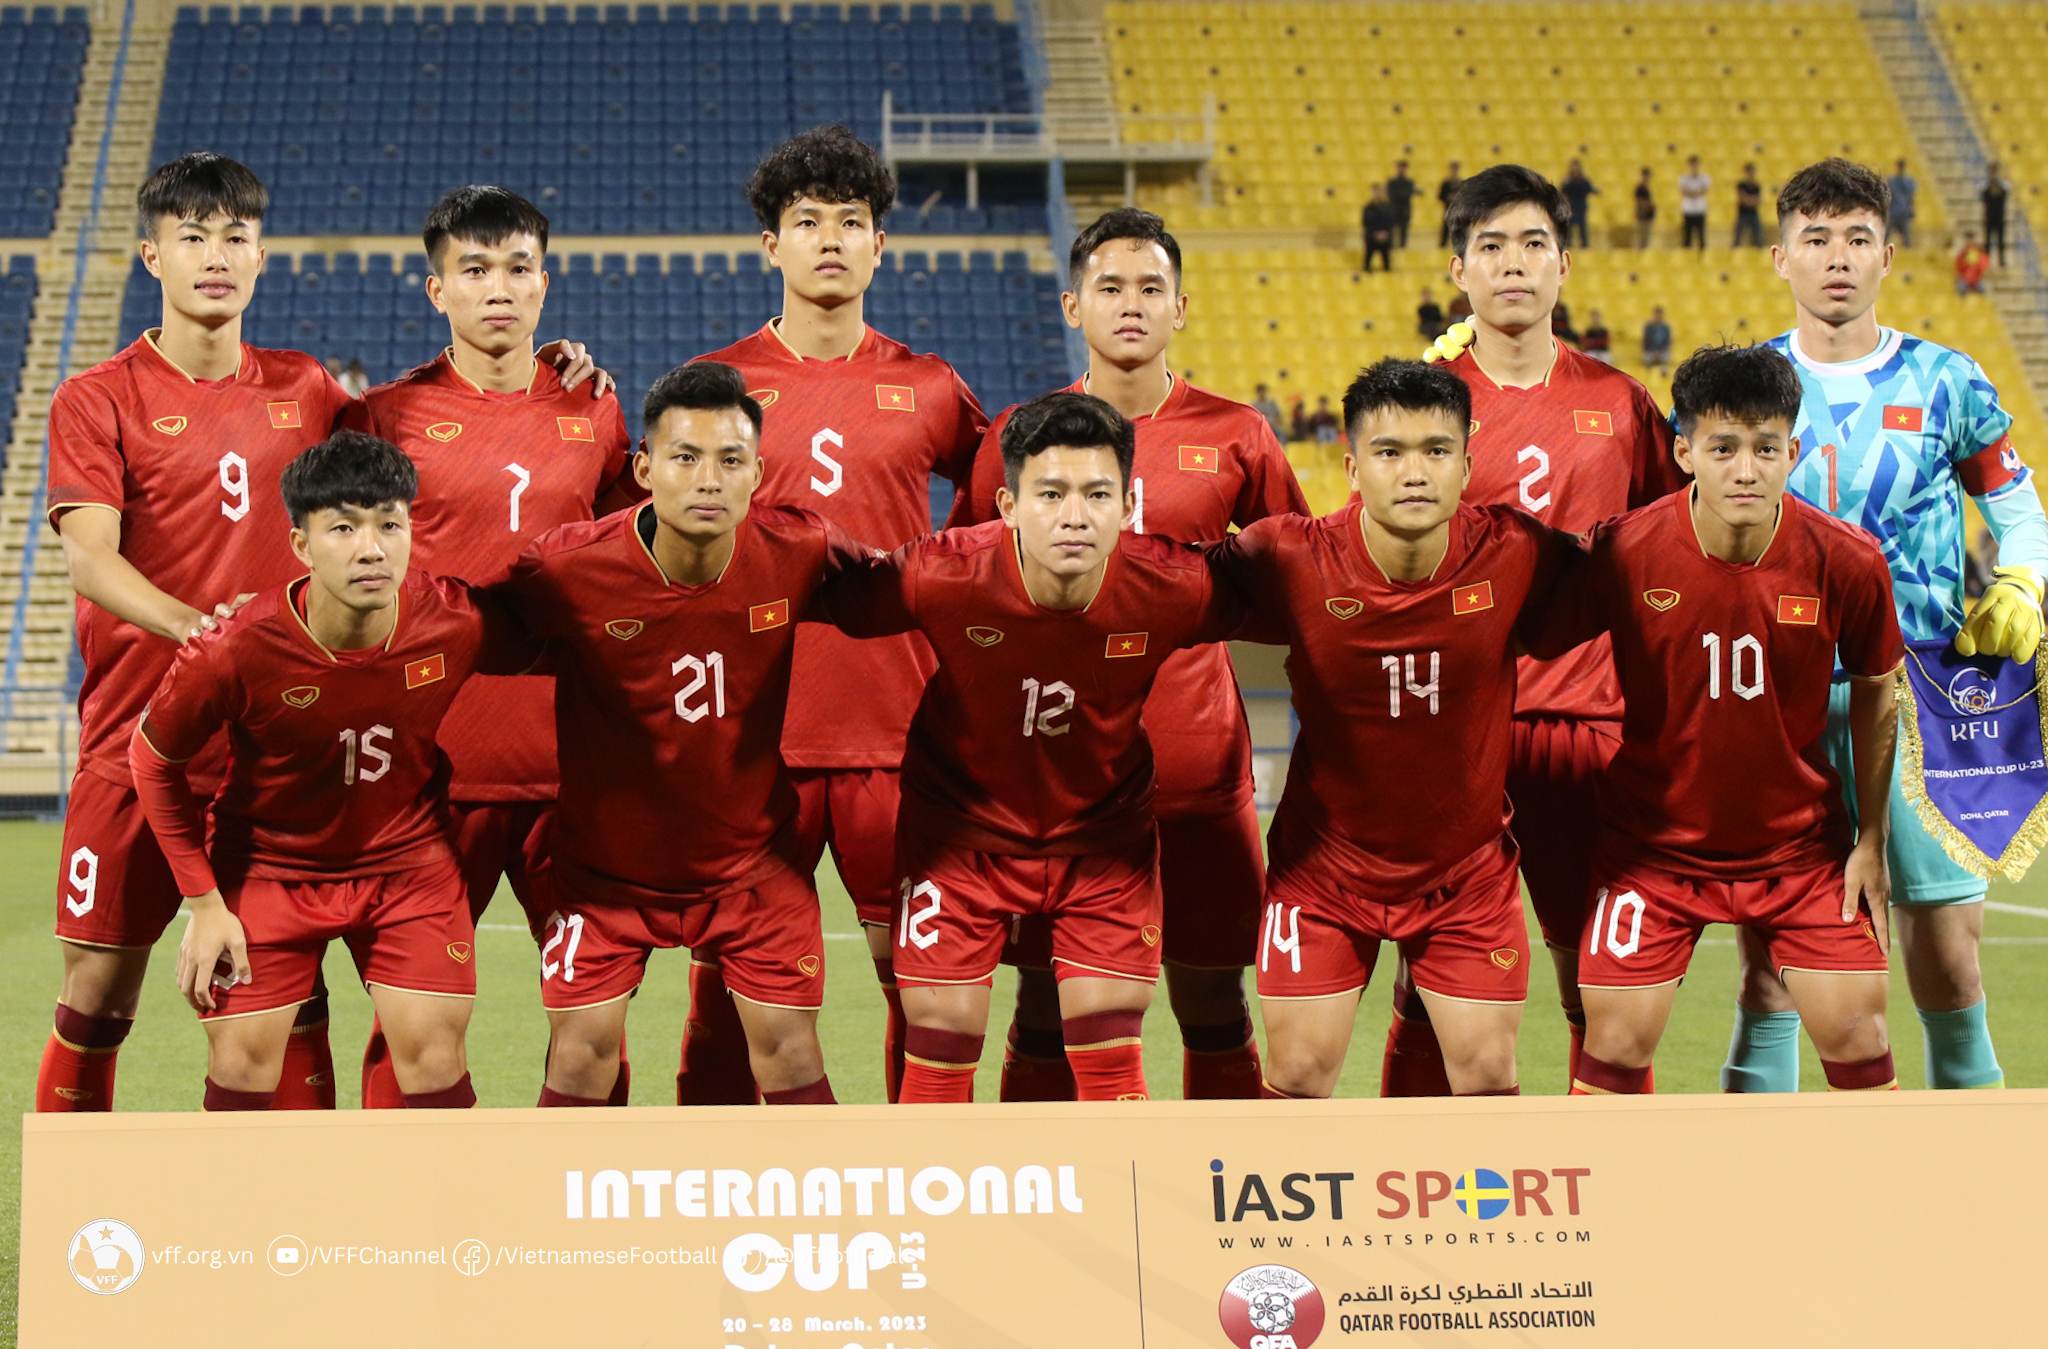 Những tín hiệu lạc quan đã xuất hiện trong lối chơi của U23 Việt Nam